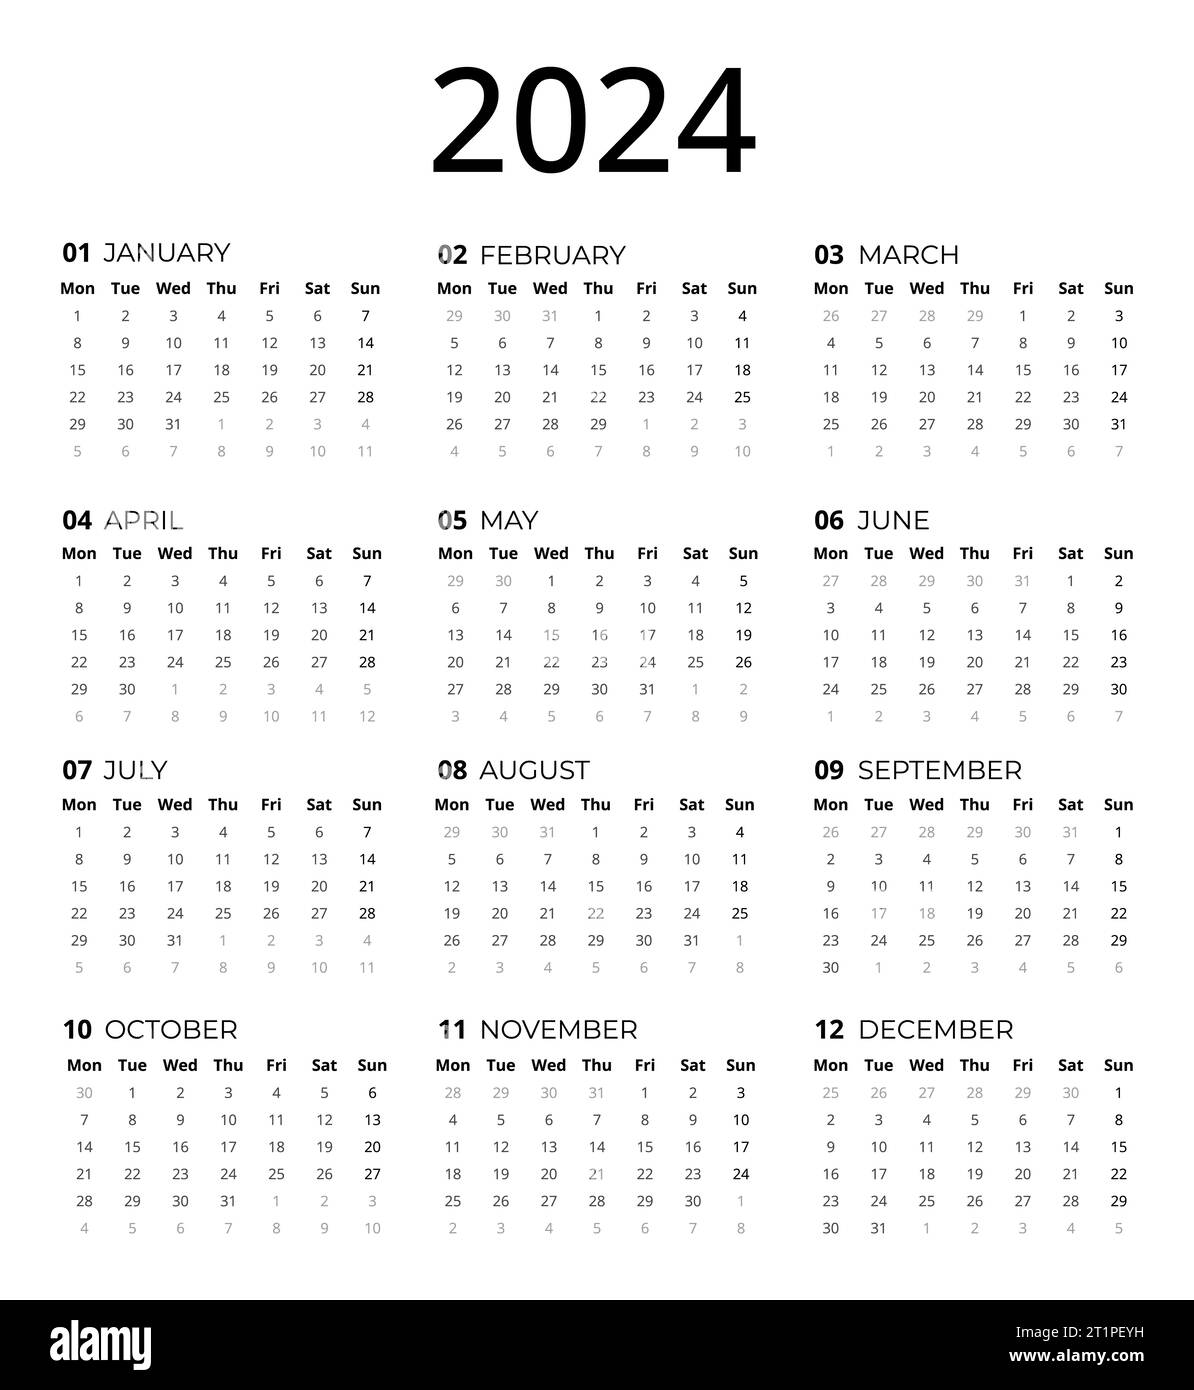 Kalender für 2024, 2024 Kalendervorlage, mit der Sie Ihre Kalenderentwürfe ganz einfach gestalten können. Einfaches Calendar 2024-Design Stockfoto